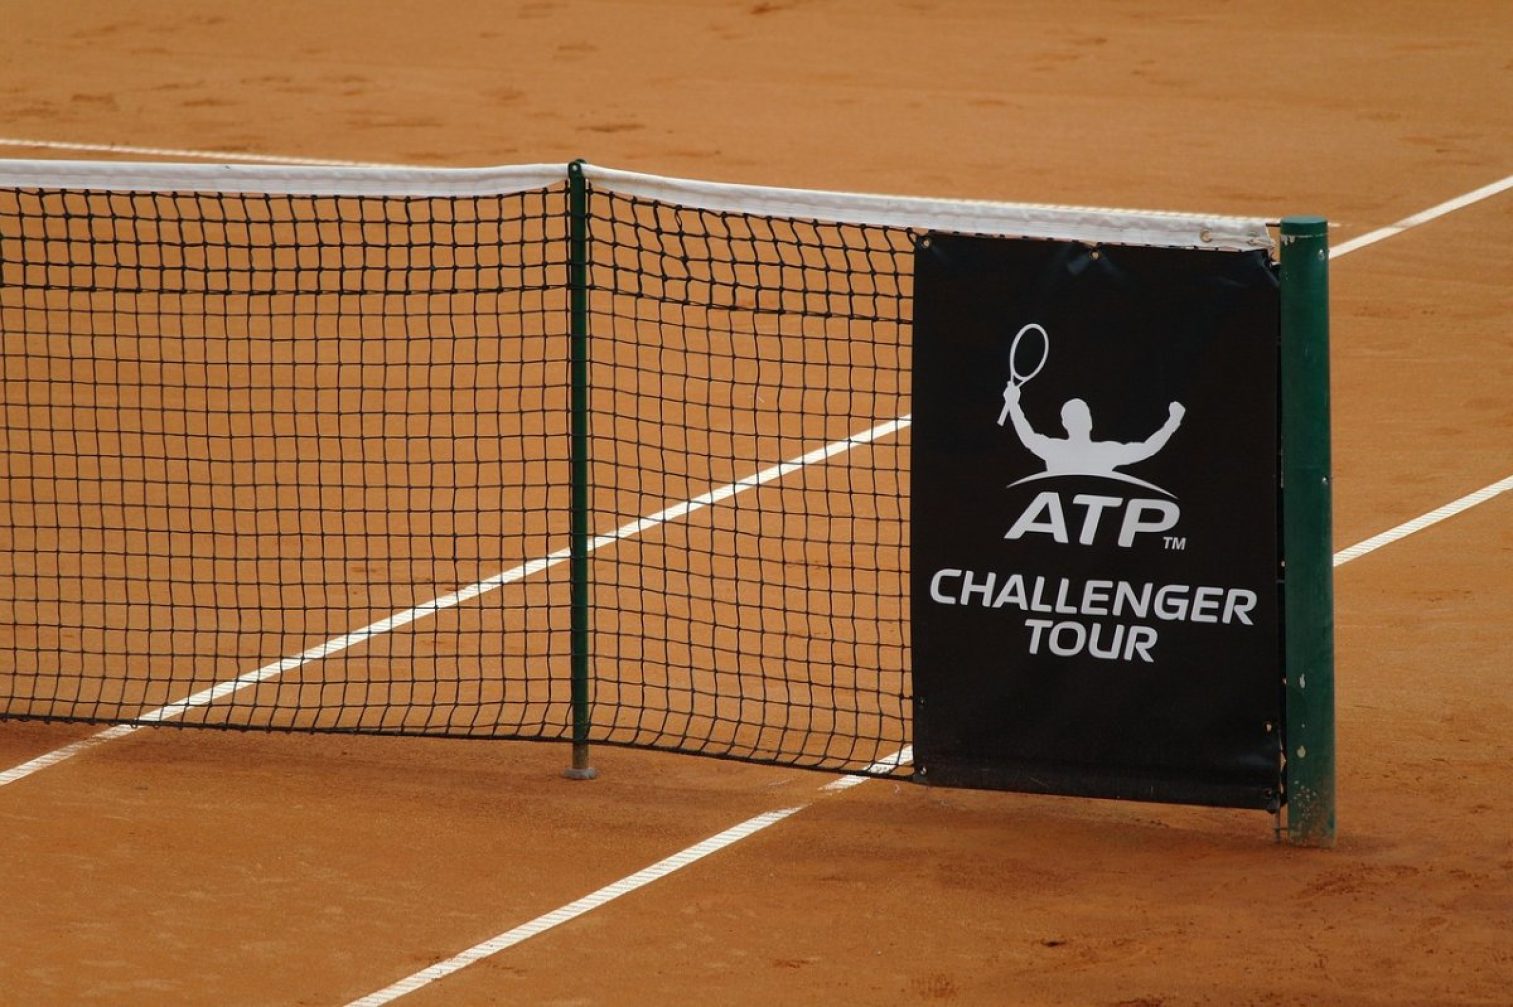 clay court, tennis court, net